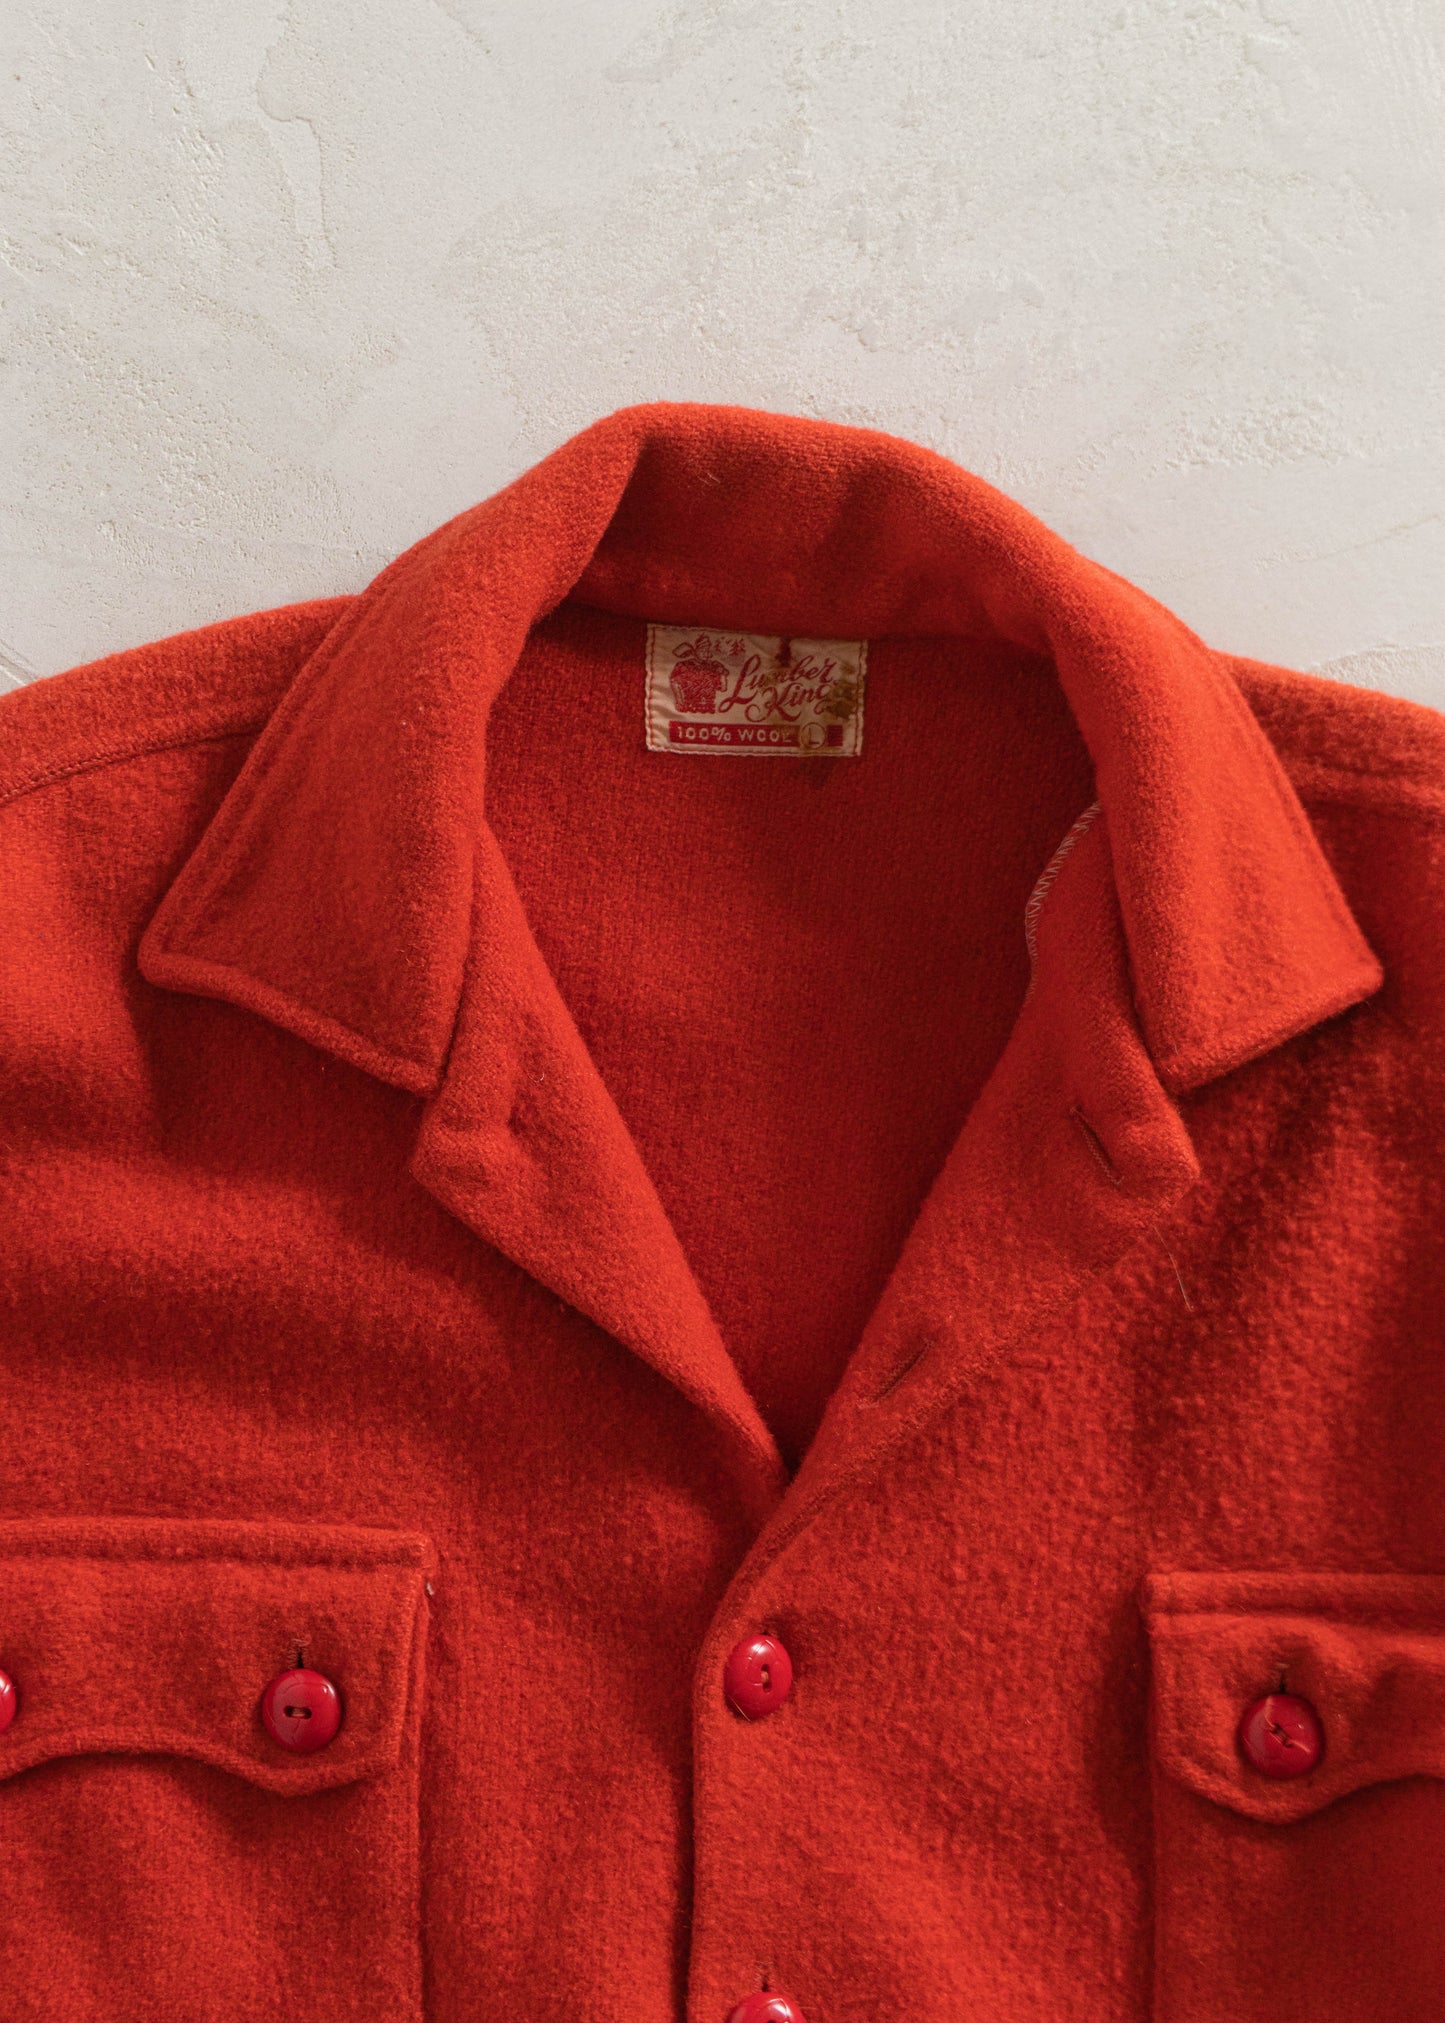 1970s Lunber King Wool Flannel Jacket Size L/XL